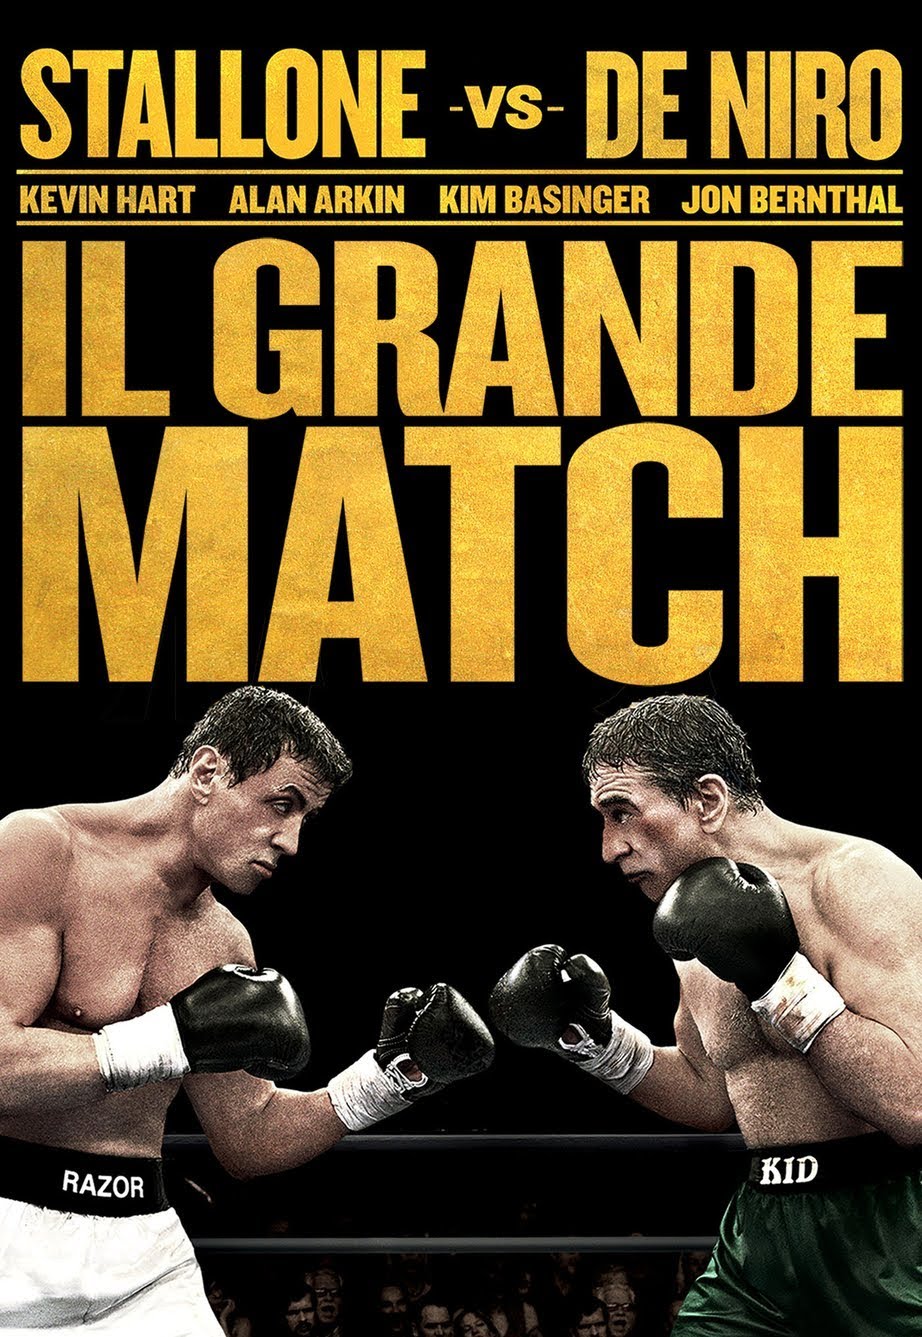 Il grande match [HD] (2014)